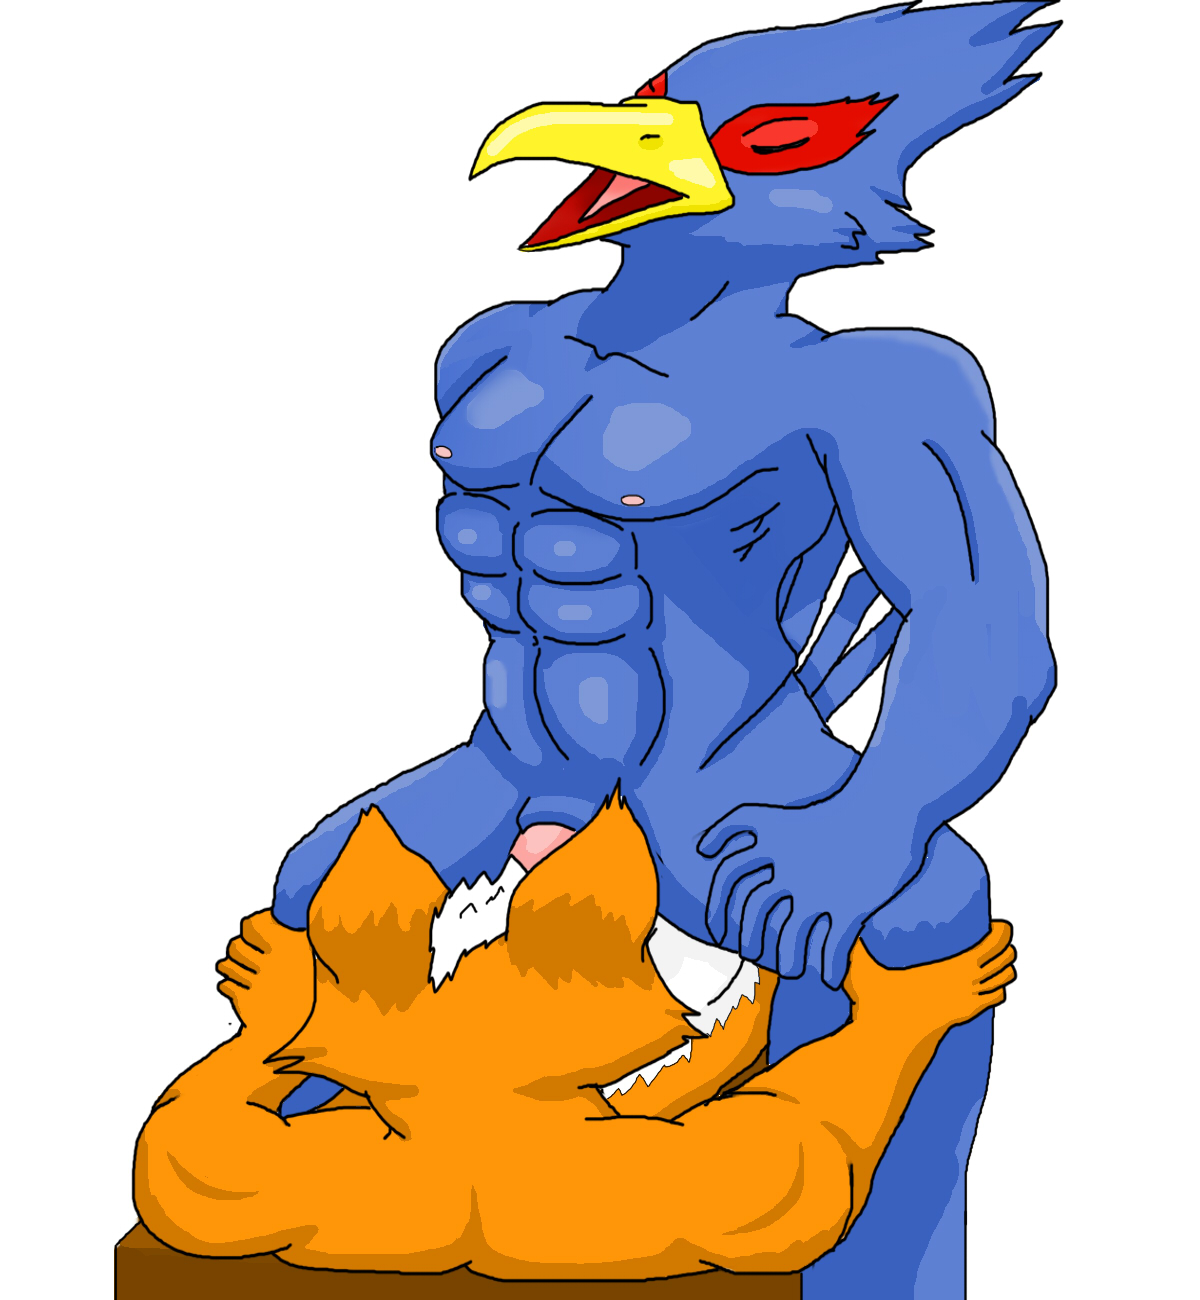 StarFox sucking Falco's cock